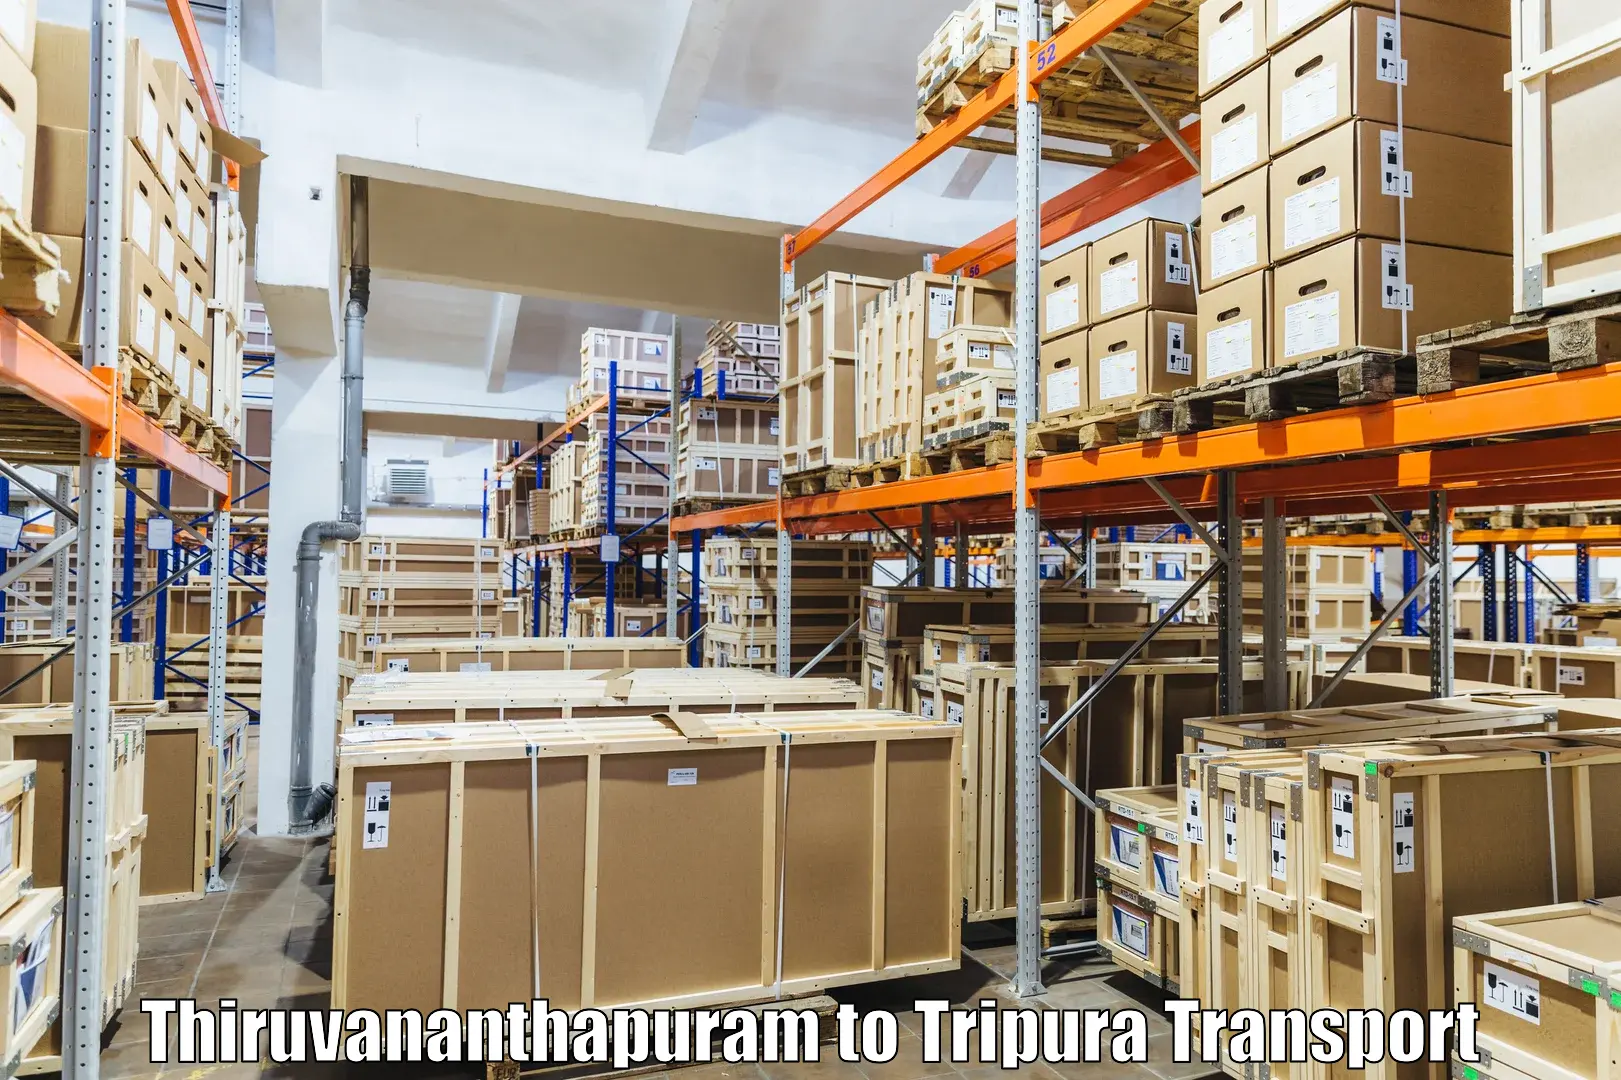 Daily transport service in Thiruvananthapuram to Tripura